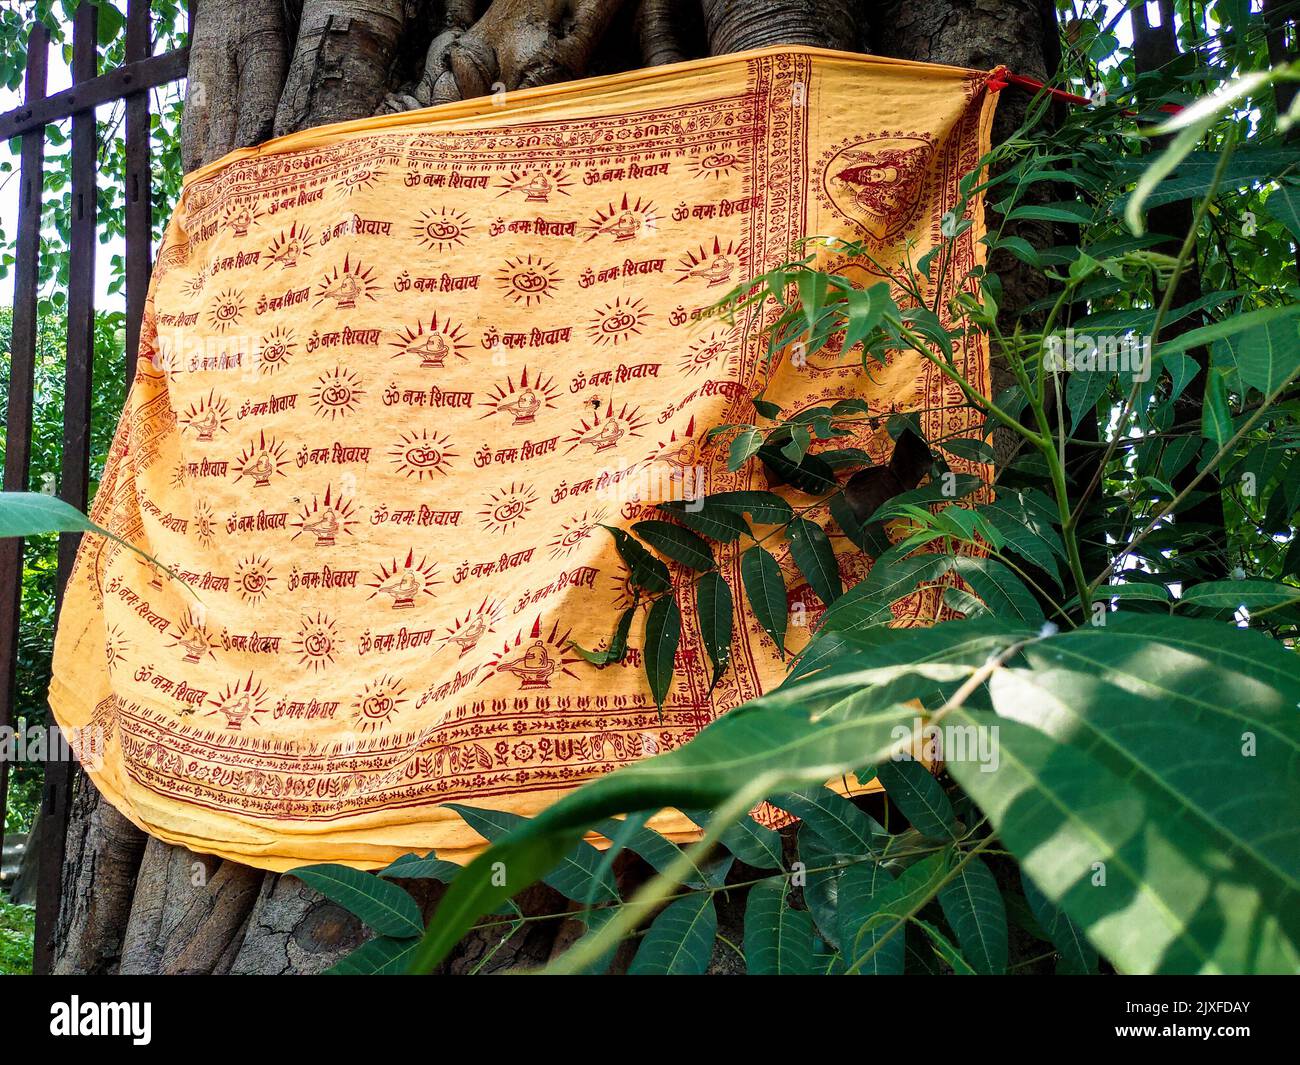 Giugno 24th 2021 Dehradun India. Un panno sacro legato intorno ad un albero Bodhi o Peepal in un tempio. Traduzione in inglese del testo scritto' o salutations to Foto Stock